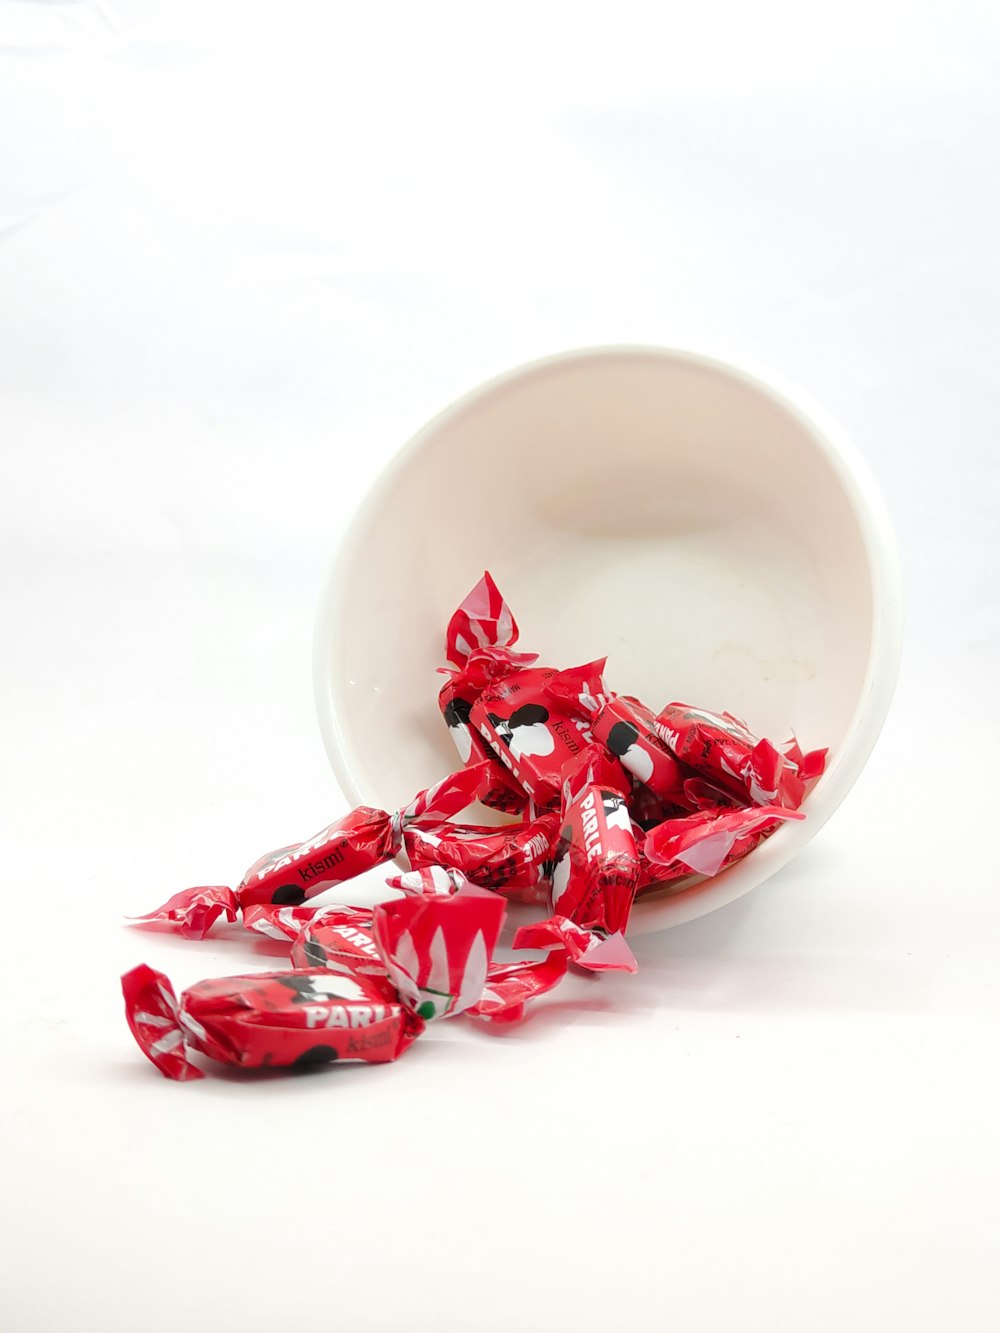 pétalos rojos en un cuenco de cerámica blanca